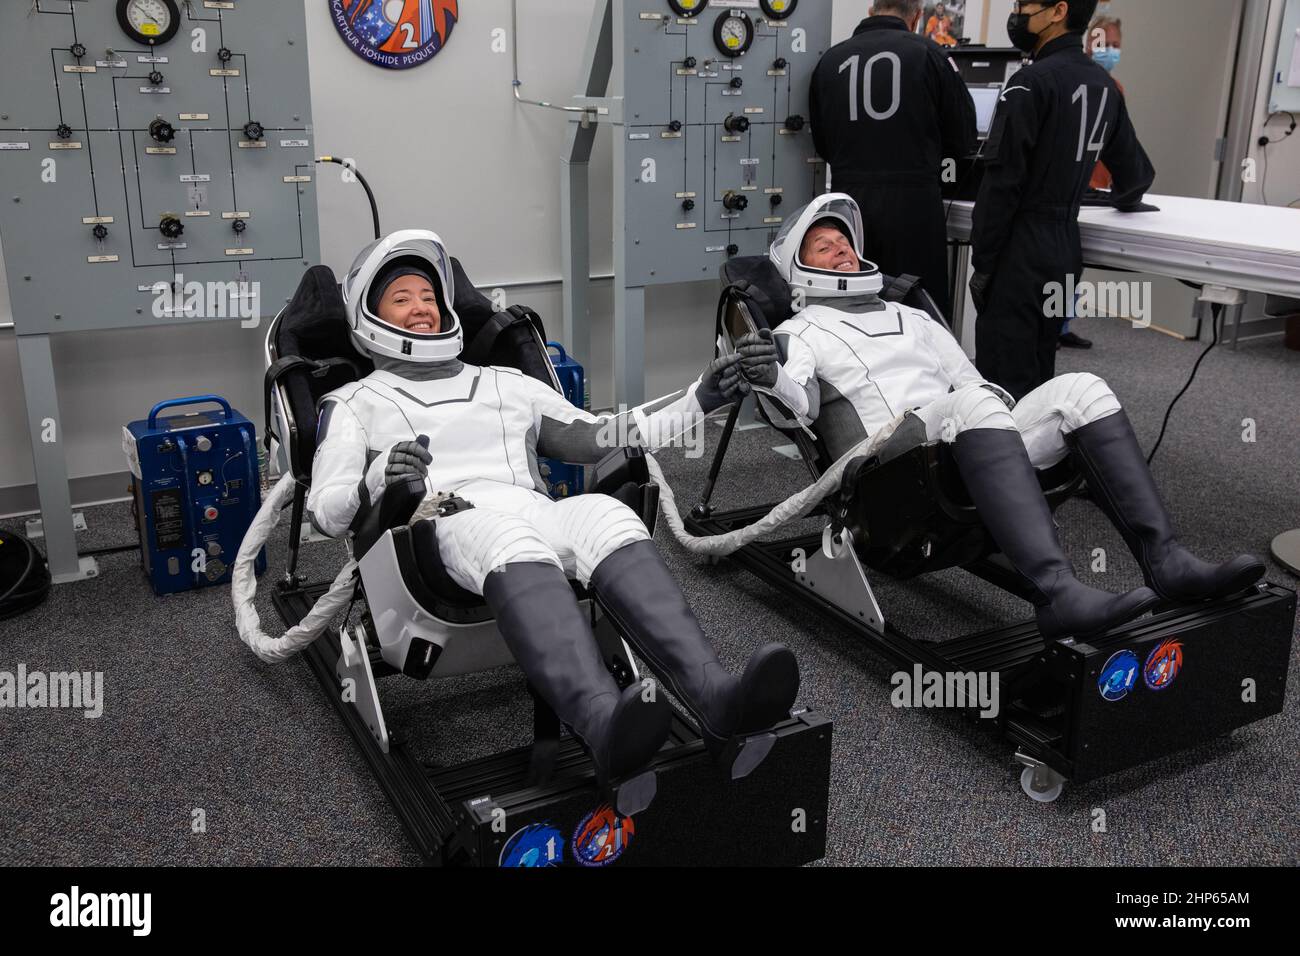 Los astronautas de la NASA Megan McArthur, Left, y Shane Kimbrough están sentados dentro de la sala de la tripulación en el edificio Neil Armstrong Operations and Checkout del Centro Espacial Kennedy de la NASA en Florida, el 23 de abril de 2021. McArthur y Kimbrough, junto con el astronauta de la ESA Thomas Pesquet y el astronauta de la JAXA Akihiko Hoshide, se dirigirán a la Estación Espacial Internacional en la misión SpaceX Crew-2 de la NASA. Crew Dragon Endeavour de SpaceX lanzará hoy a las 5:49 horas EDT el cohete Falcon 9 de la empresa desde el complejo de lanzamiento 39A de Kennedy. Foto de stock